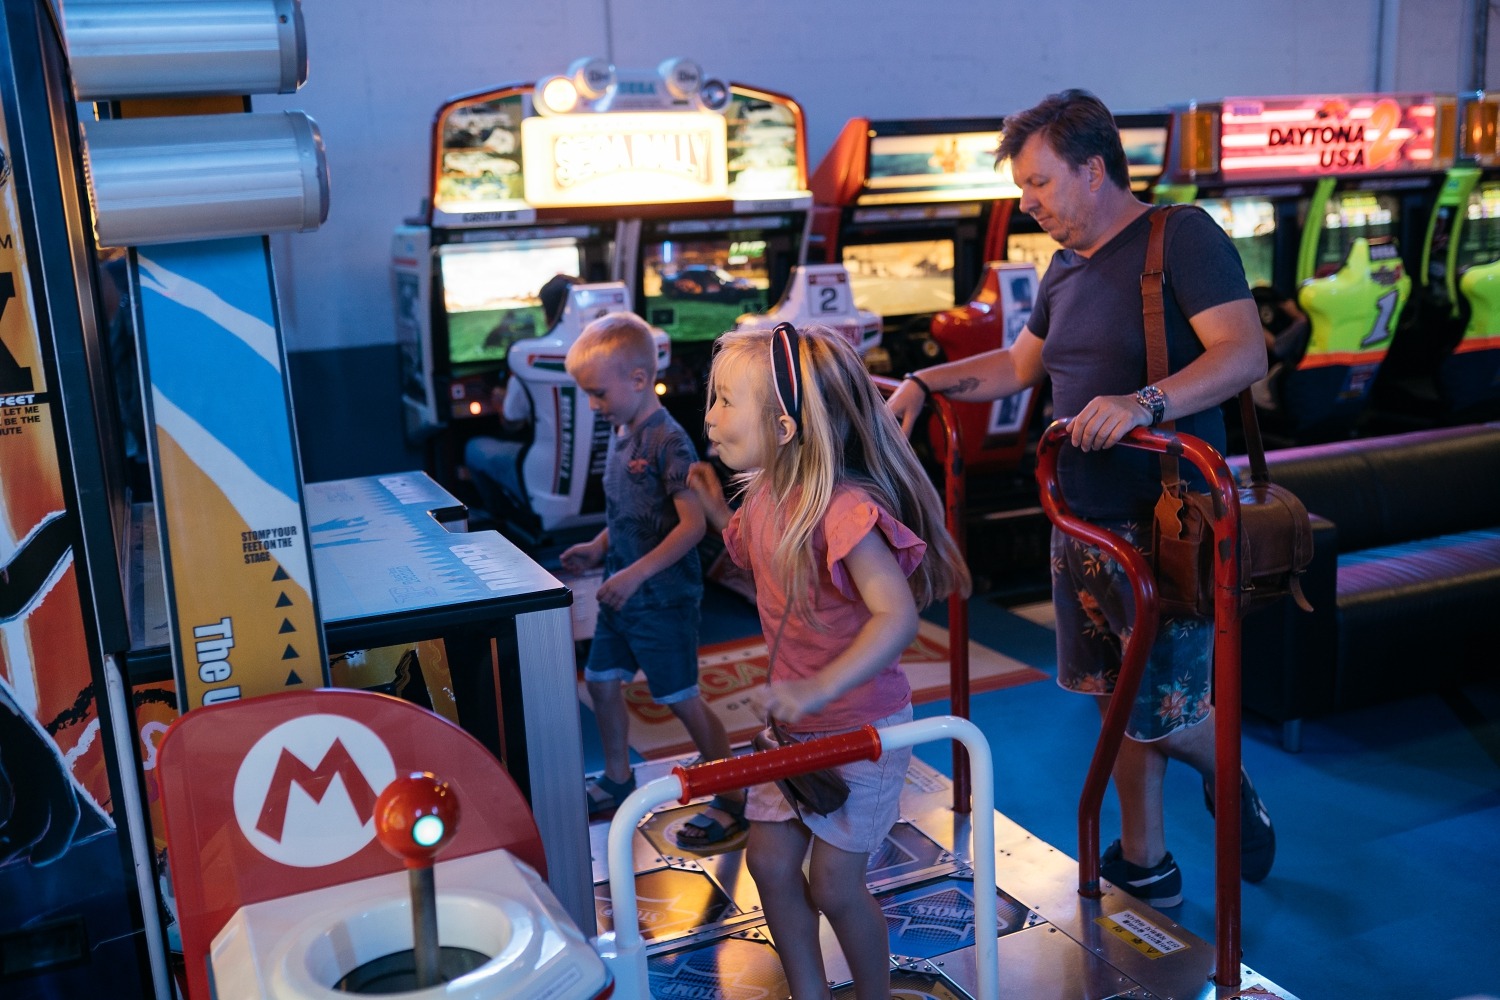 gate ninety world retro gaming salle arcade jeux vidéo nivelles brabant wallon Belgique anniversaire enfant geek 